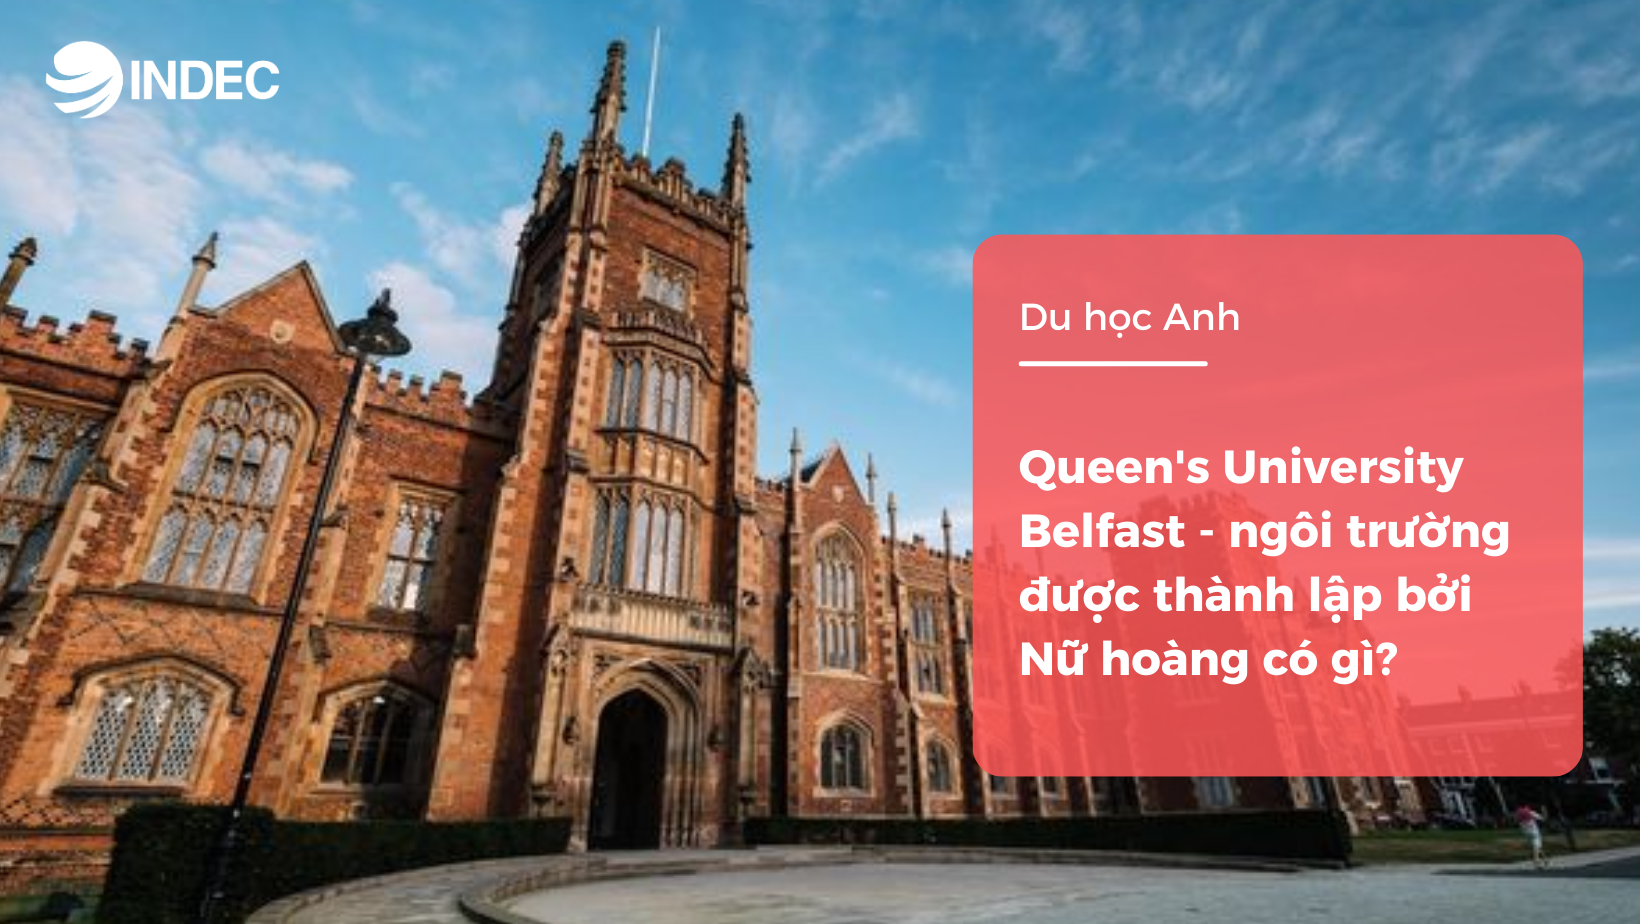 Queen's University Belfast - ngôi trường được thành lập bởi Nữ hoàng có gì